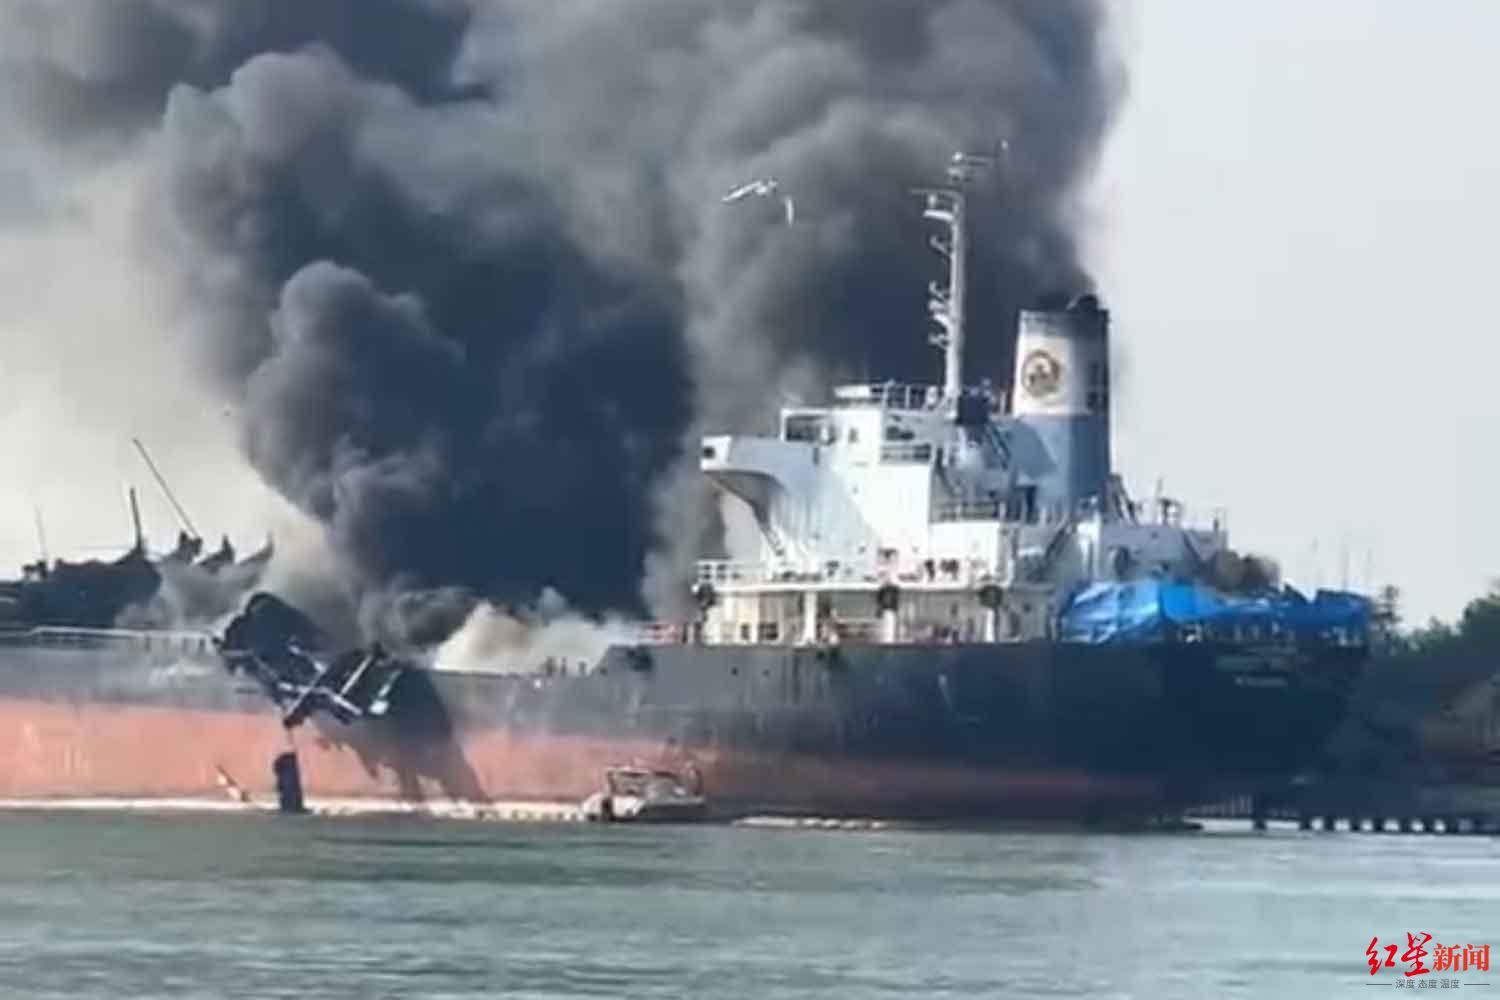 ↑停靠在泰国的“光滑海22号”油轮发生爆炸